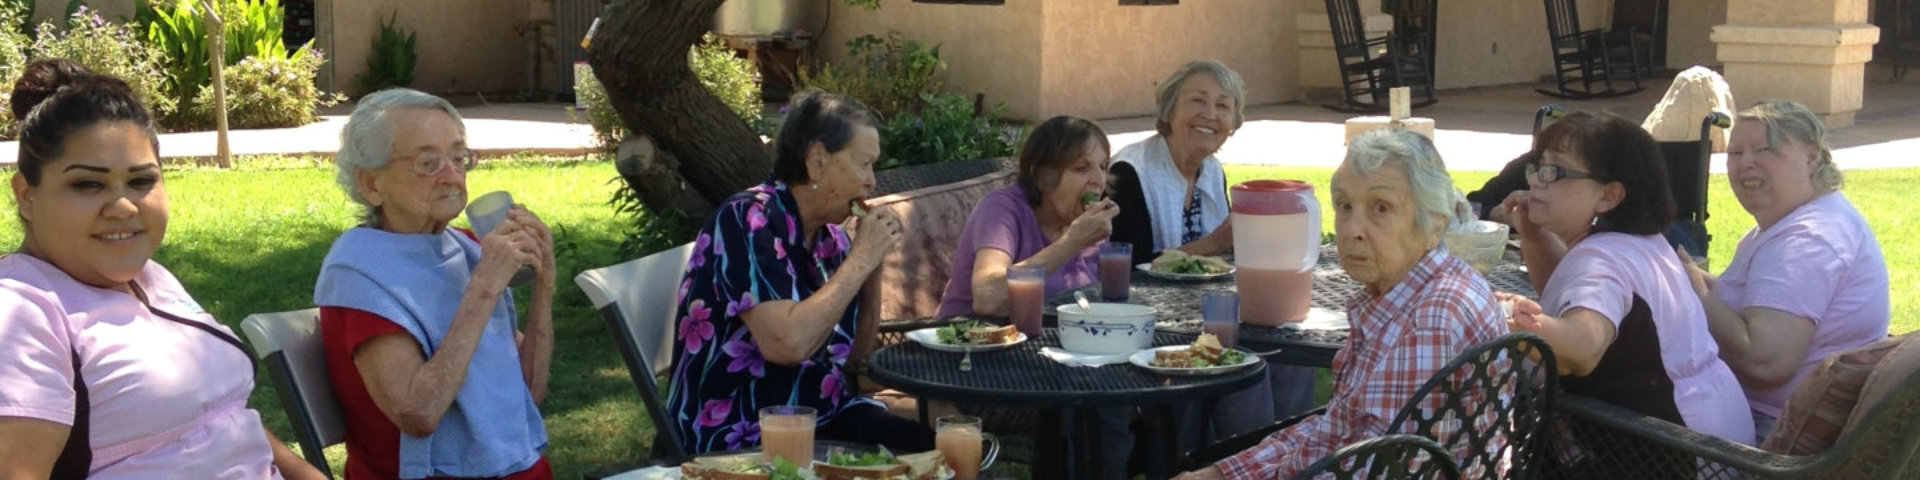 elderly ladies eating outdoors